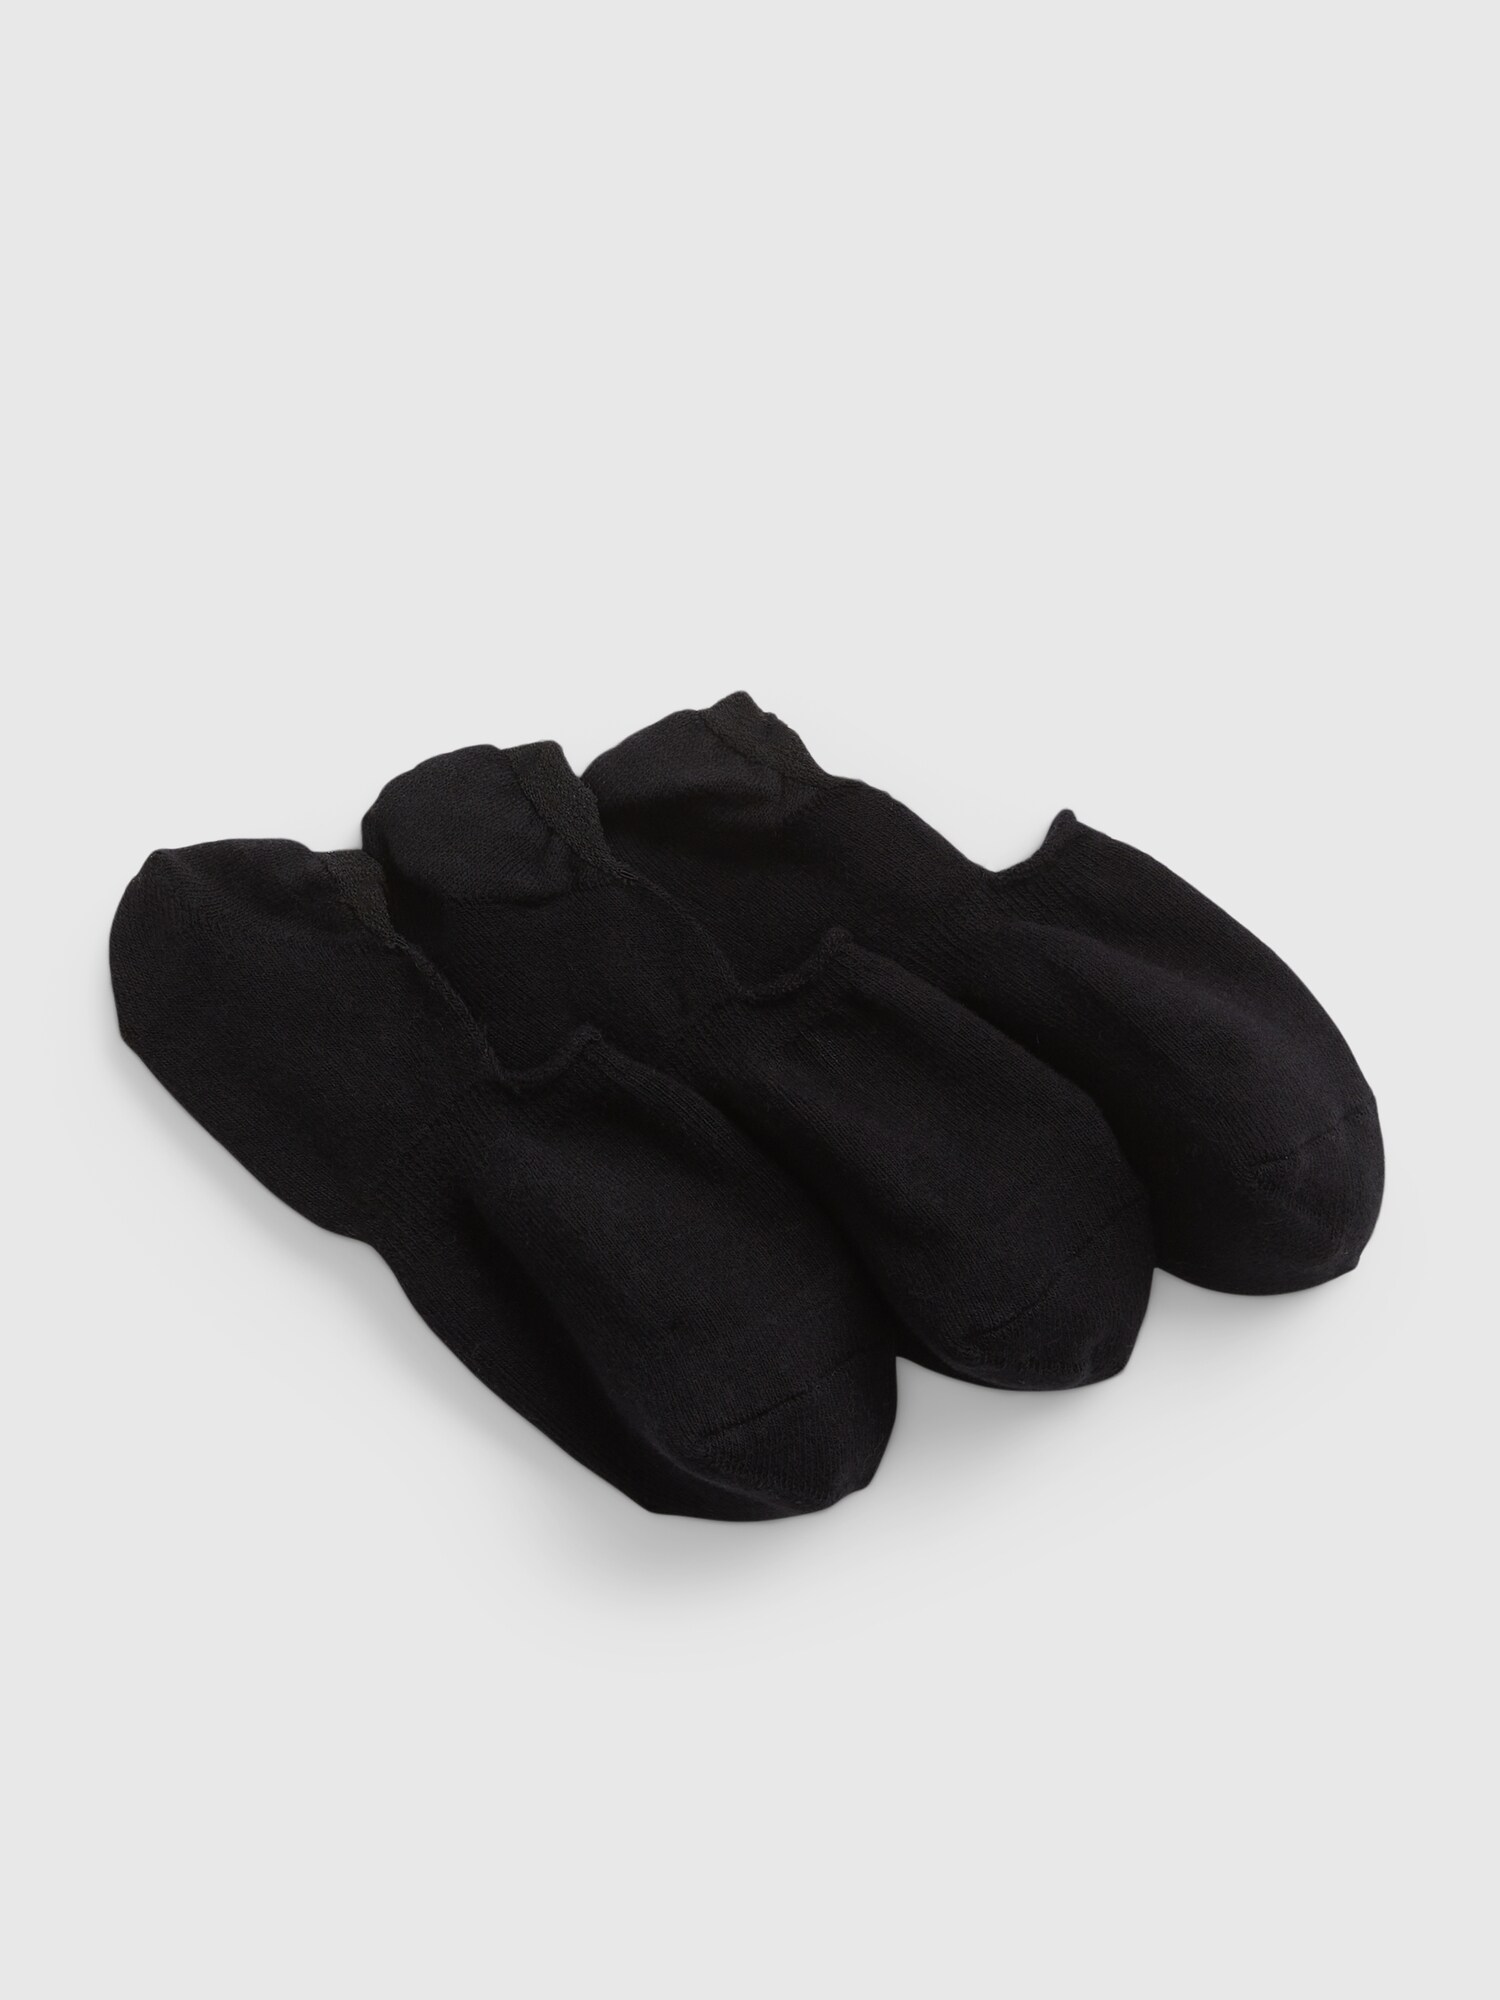 GAP Invisible socks, 3 pairs - Men